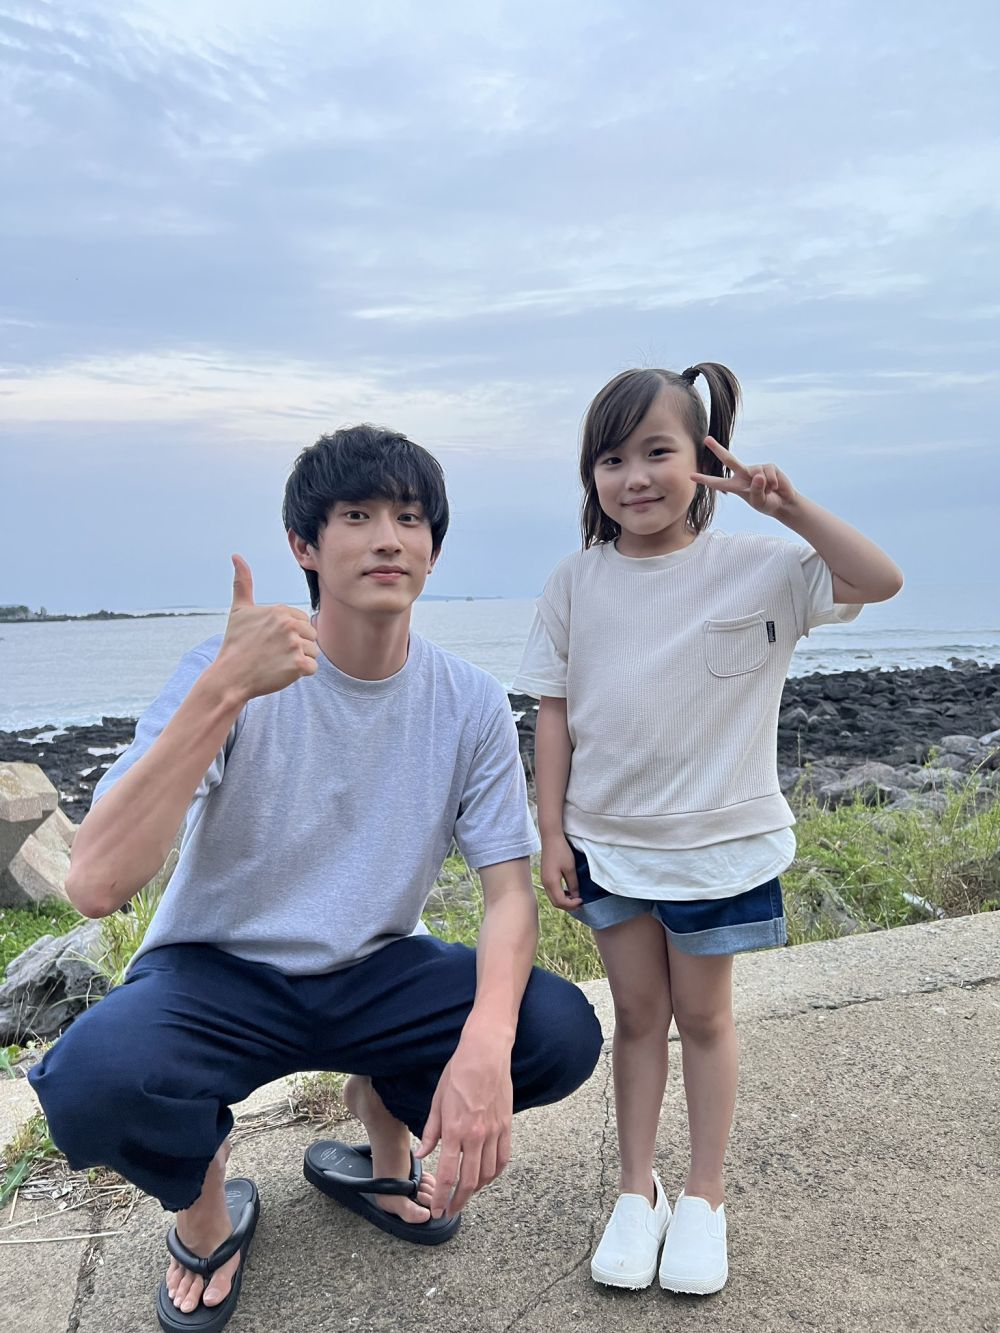 Otaku Anime Indonesia on X: Live-Action TV Drama dari serial Barakamon  tayang pada bulan Juli di Fuji TV, dimana aktris cilik Ririsa Miyazaki  berperan sebagai Naru Kotoishi, sedangkan Yosuke Sugino menjadi pemeran